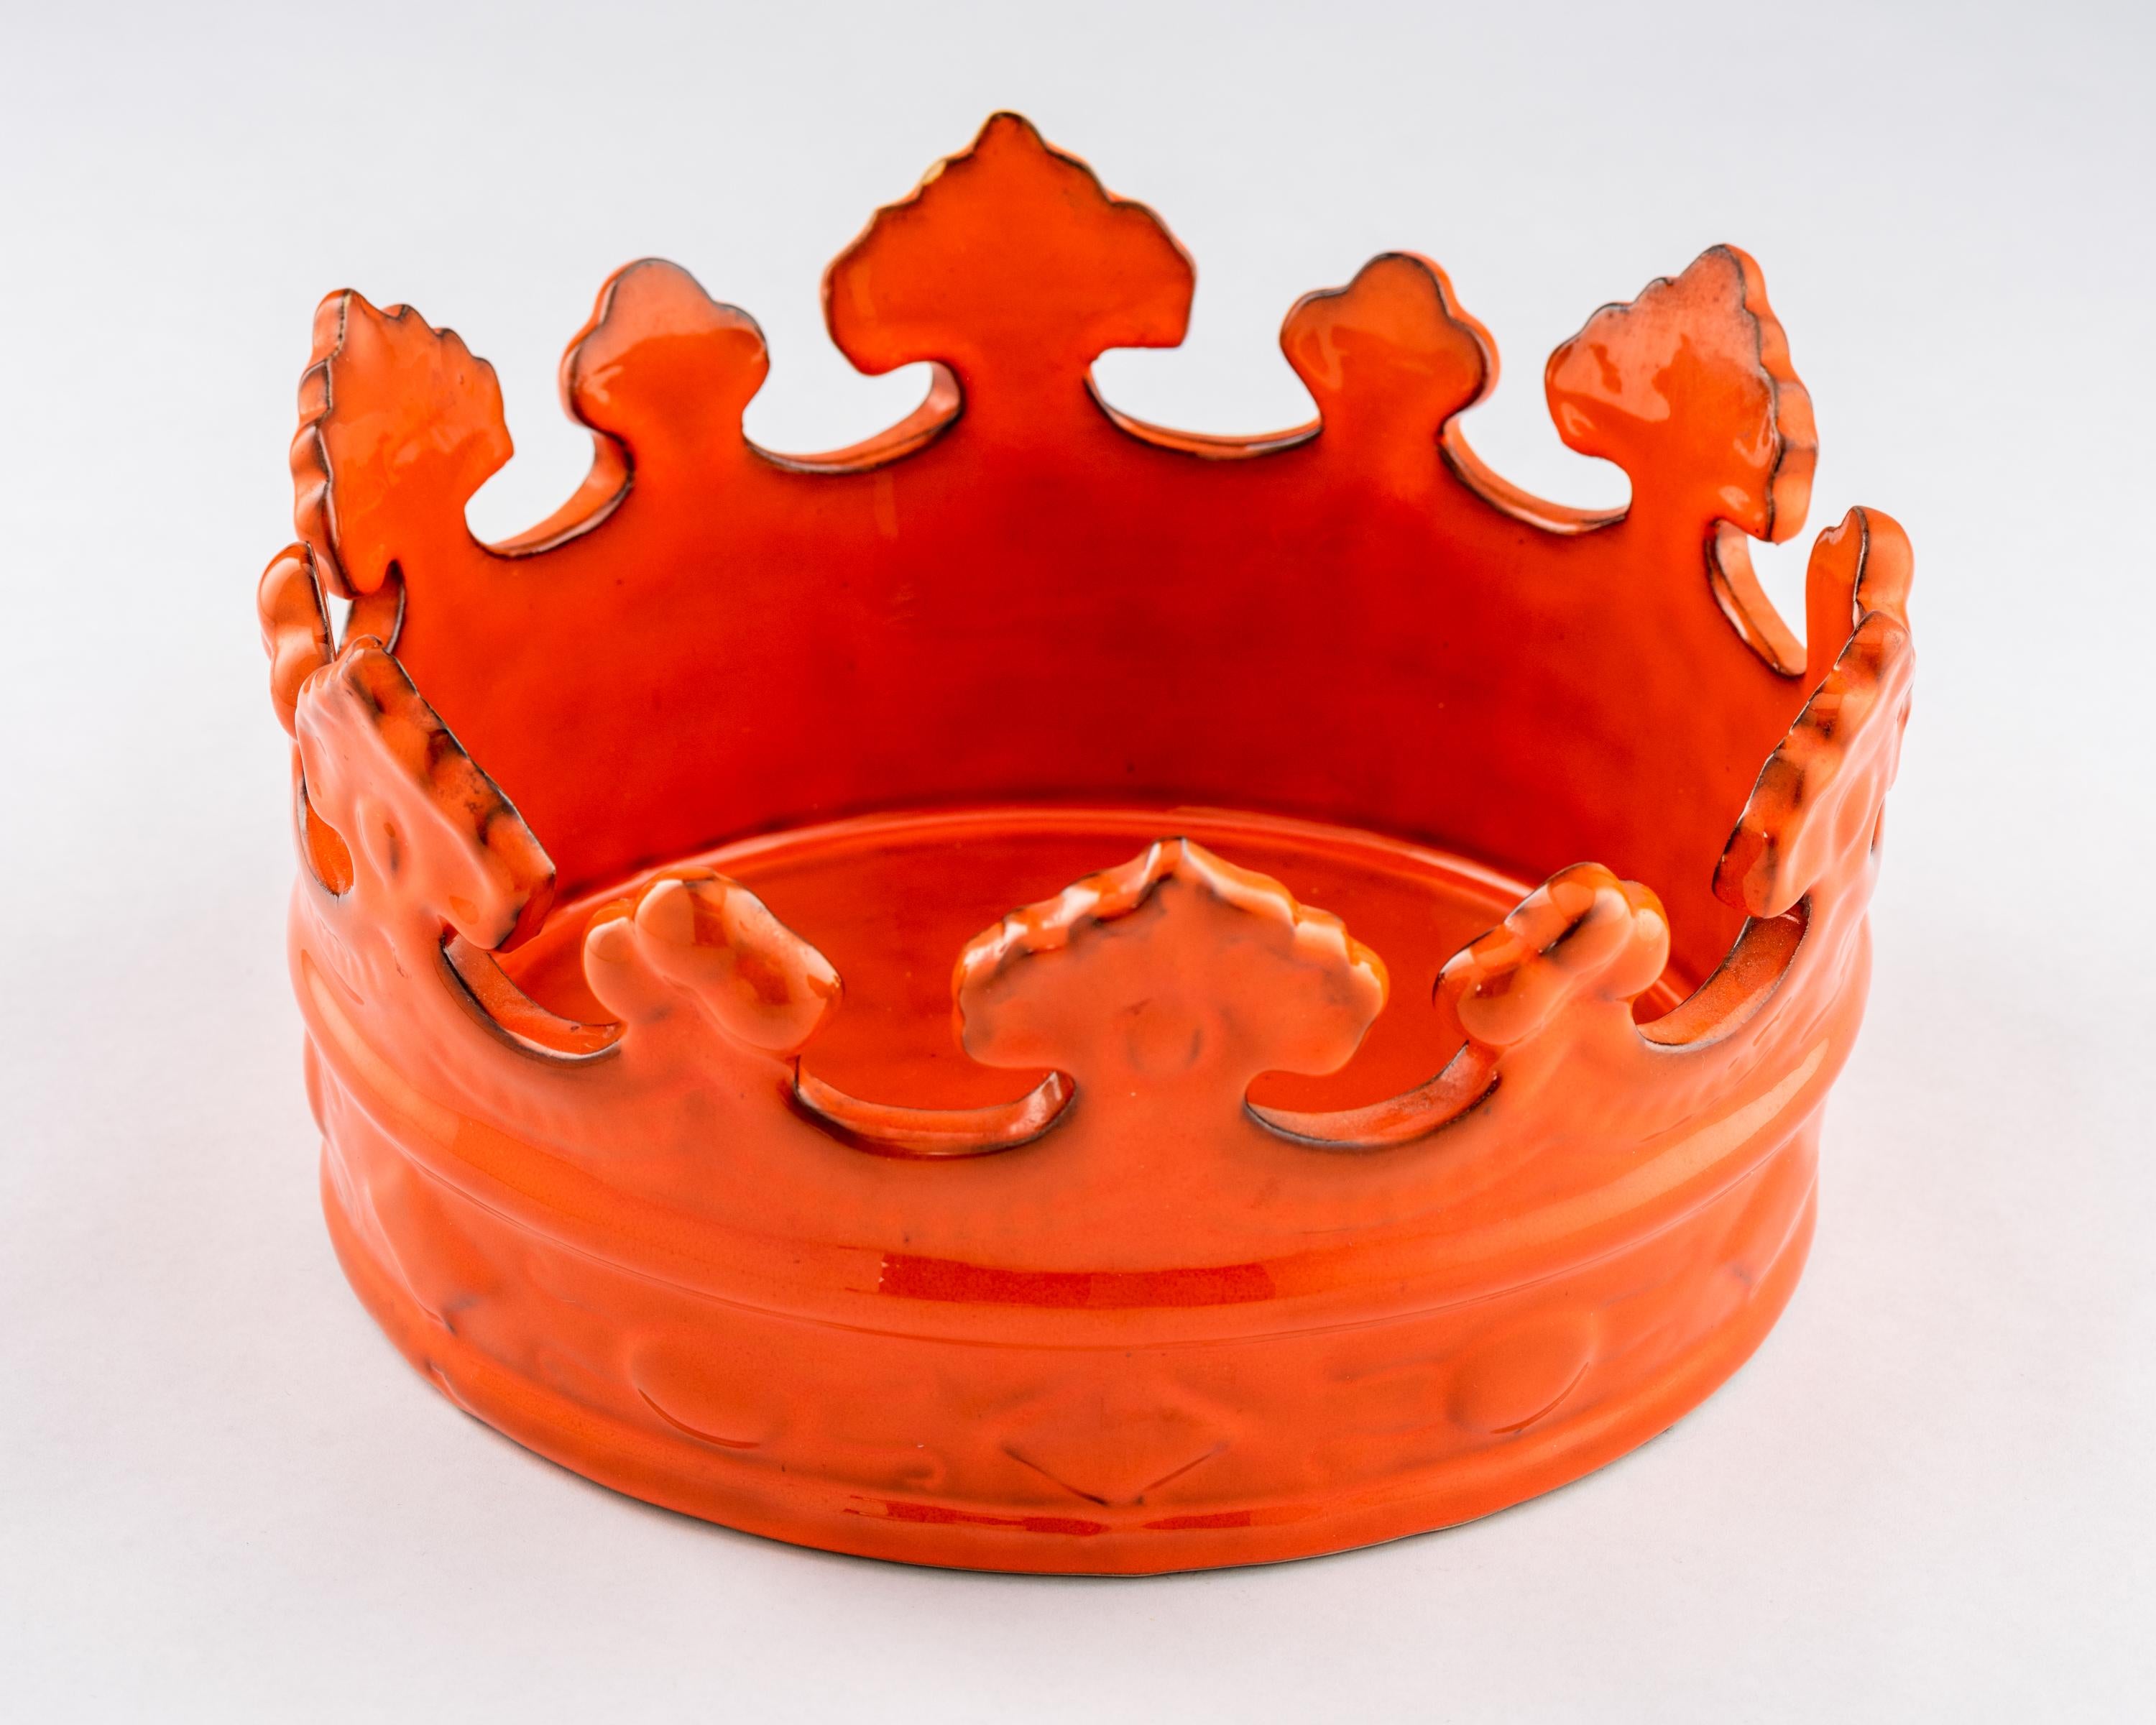 Italian Peasant Village Crown Bowl, Ceramic, Orange, Signed